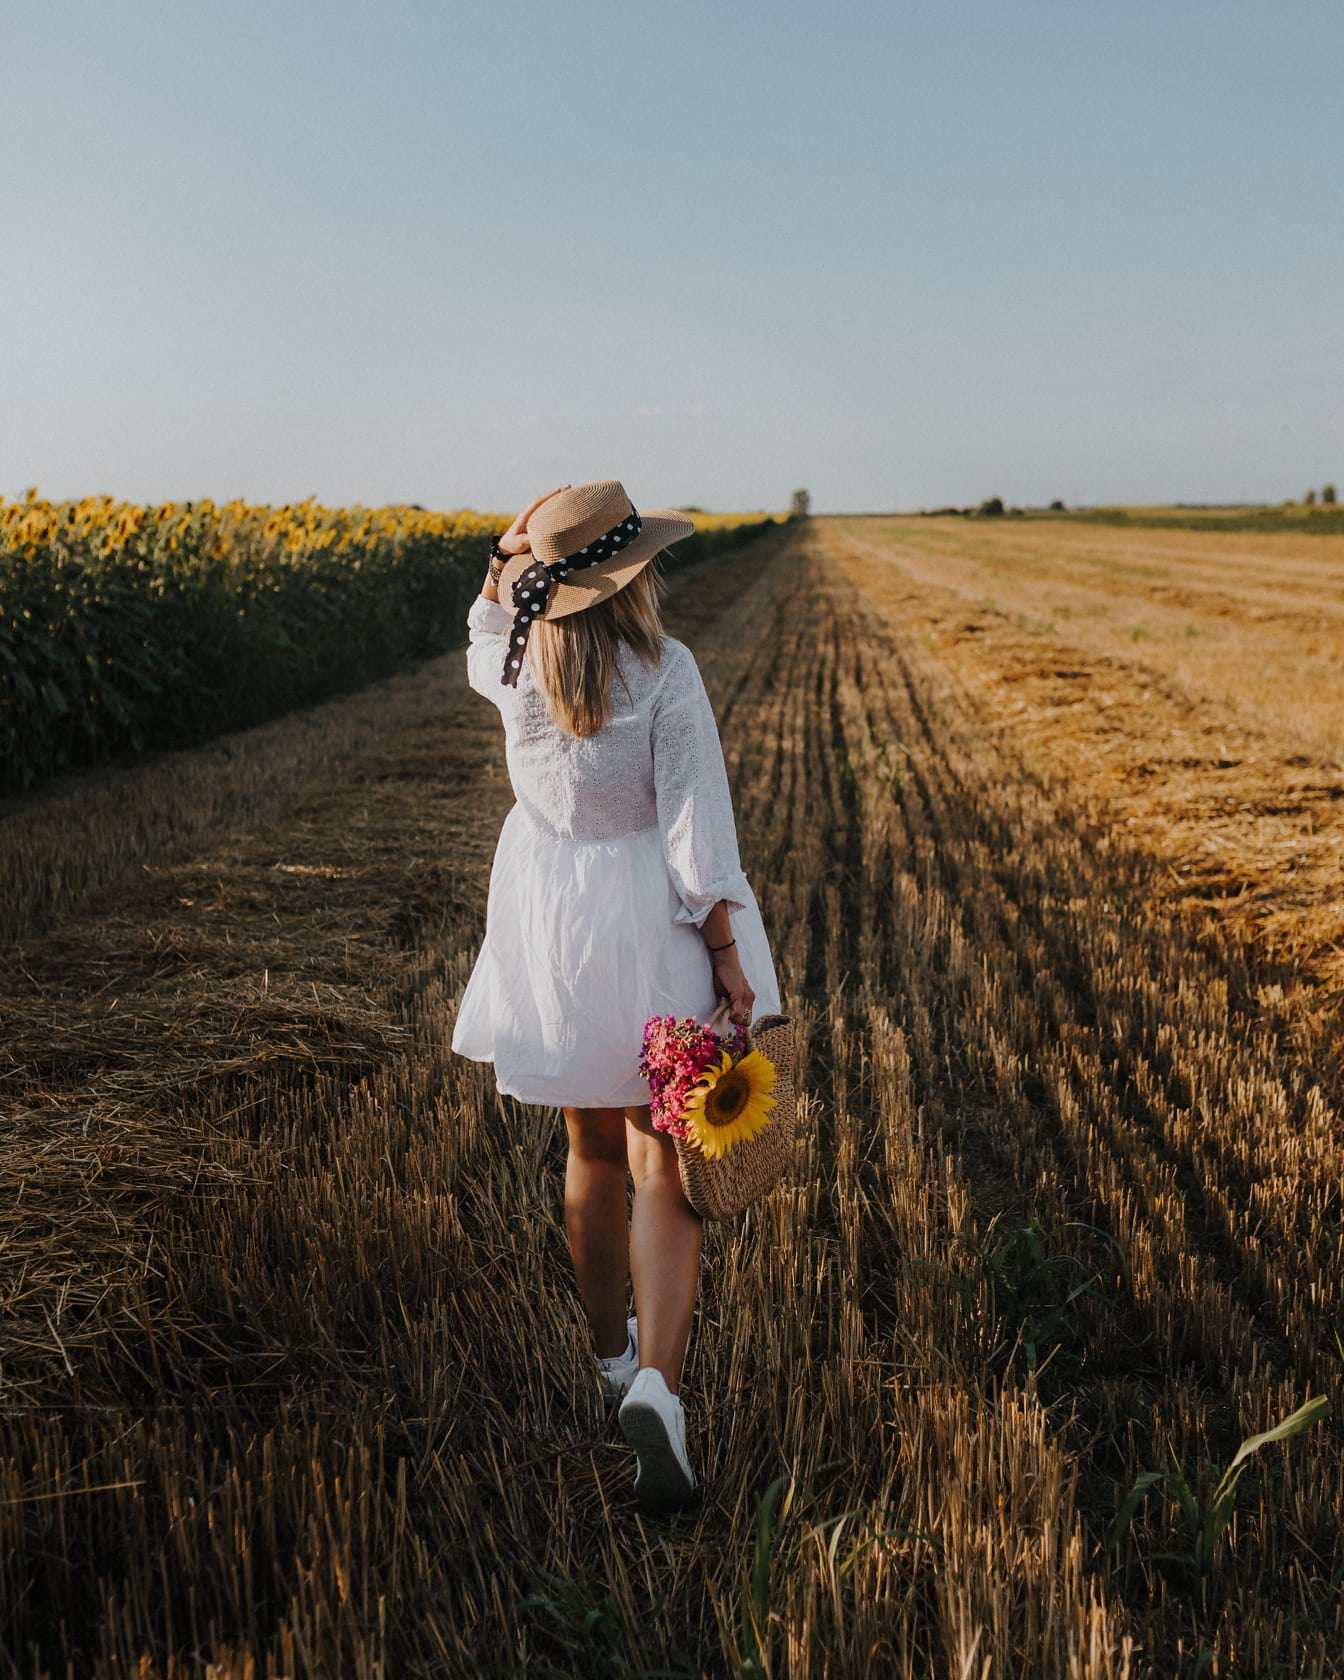 Бяла рокля и шапка на жена в житно поле